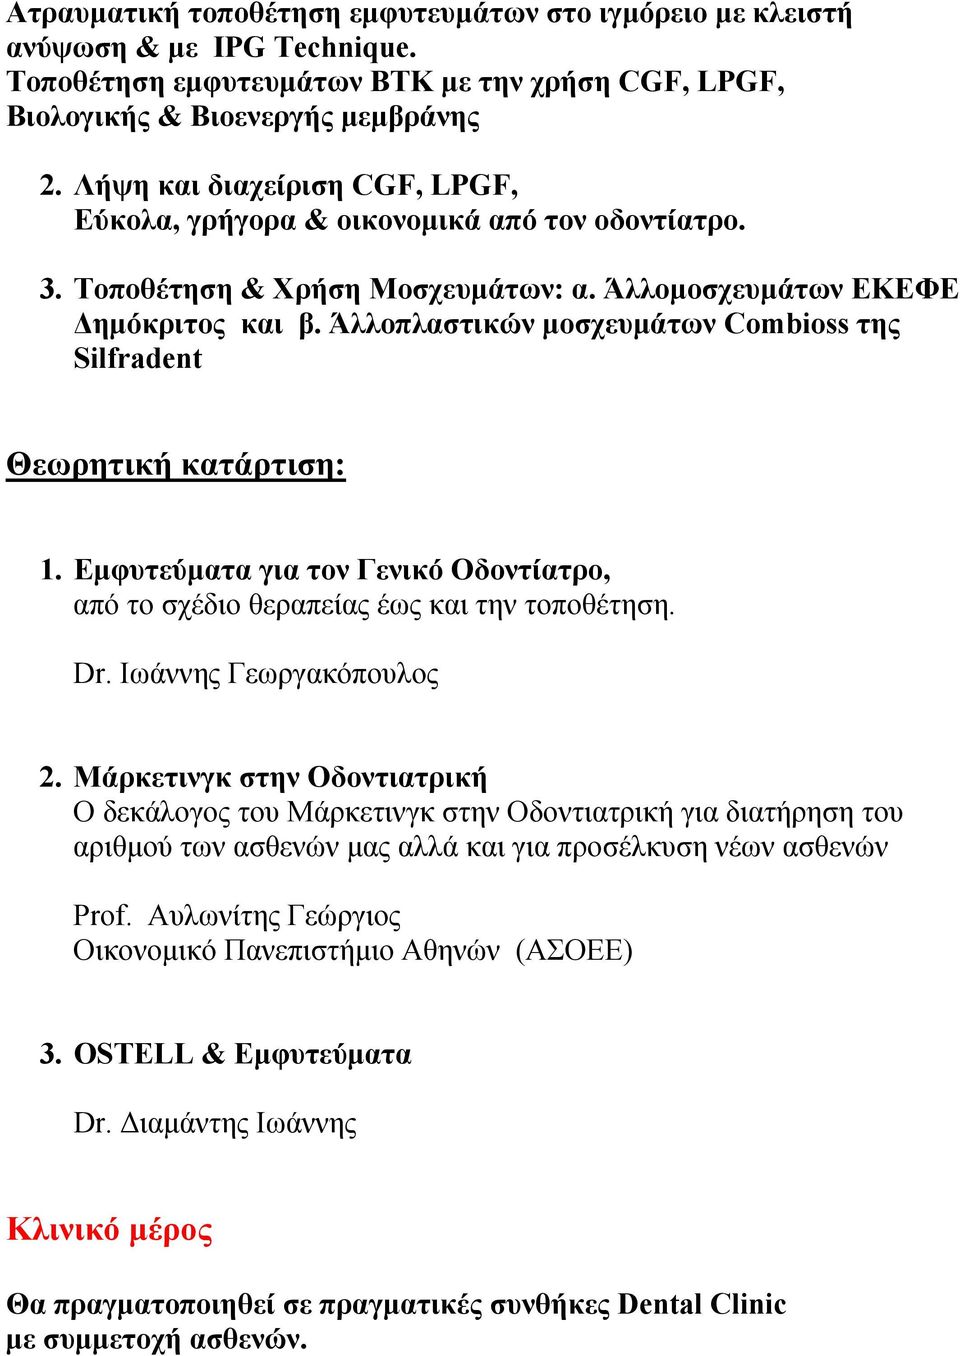 Άλλοπλαστικών μοσχευμάτων Combioss της Silfradent Θεωρητική κατάρτιση: 1. Εμφυτεύματα για τον Γενικό Οδοντίατρο, από το σχέδιο θεραπείας έως και την τοποθέτηση. Dr. Ιωάννης Γεωργακόπουλος 2.